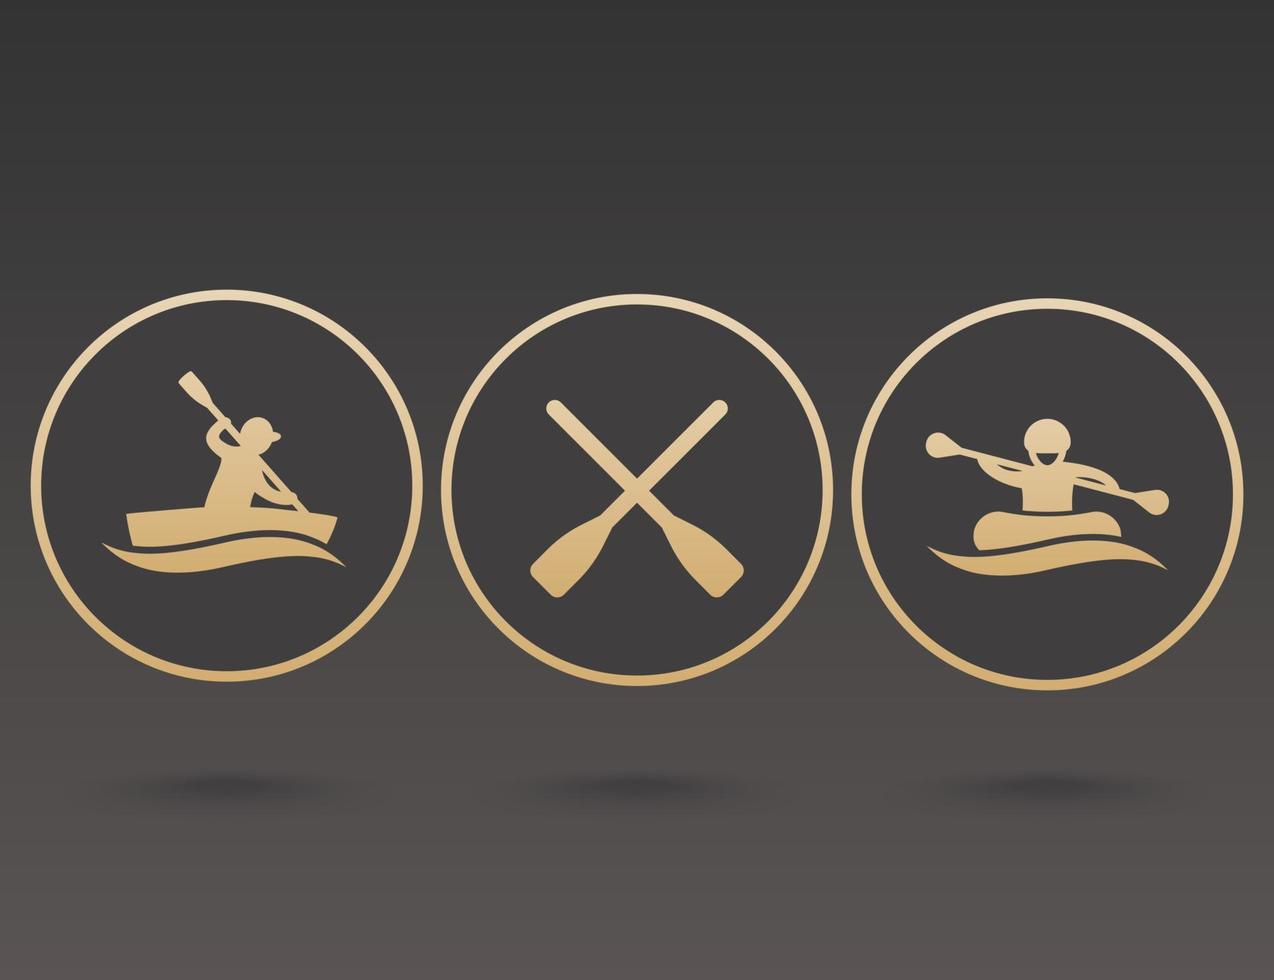 Iconos de remo, kayak, rafting, canoa, bote, remo, remos vector